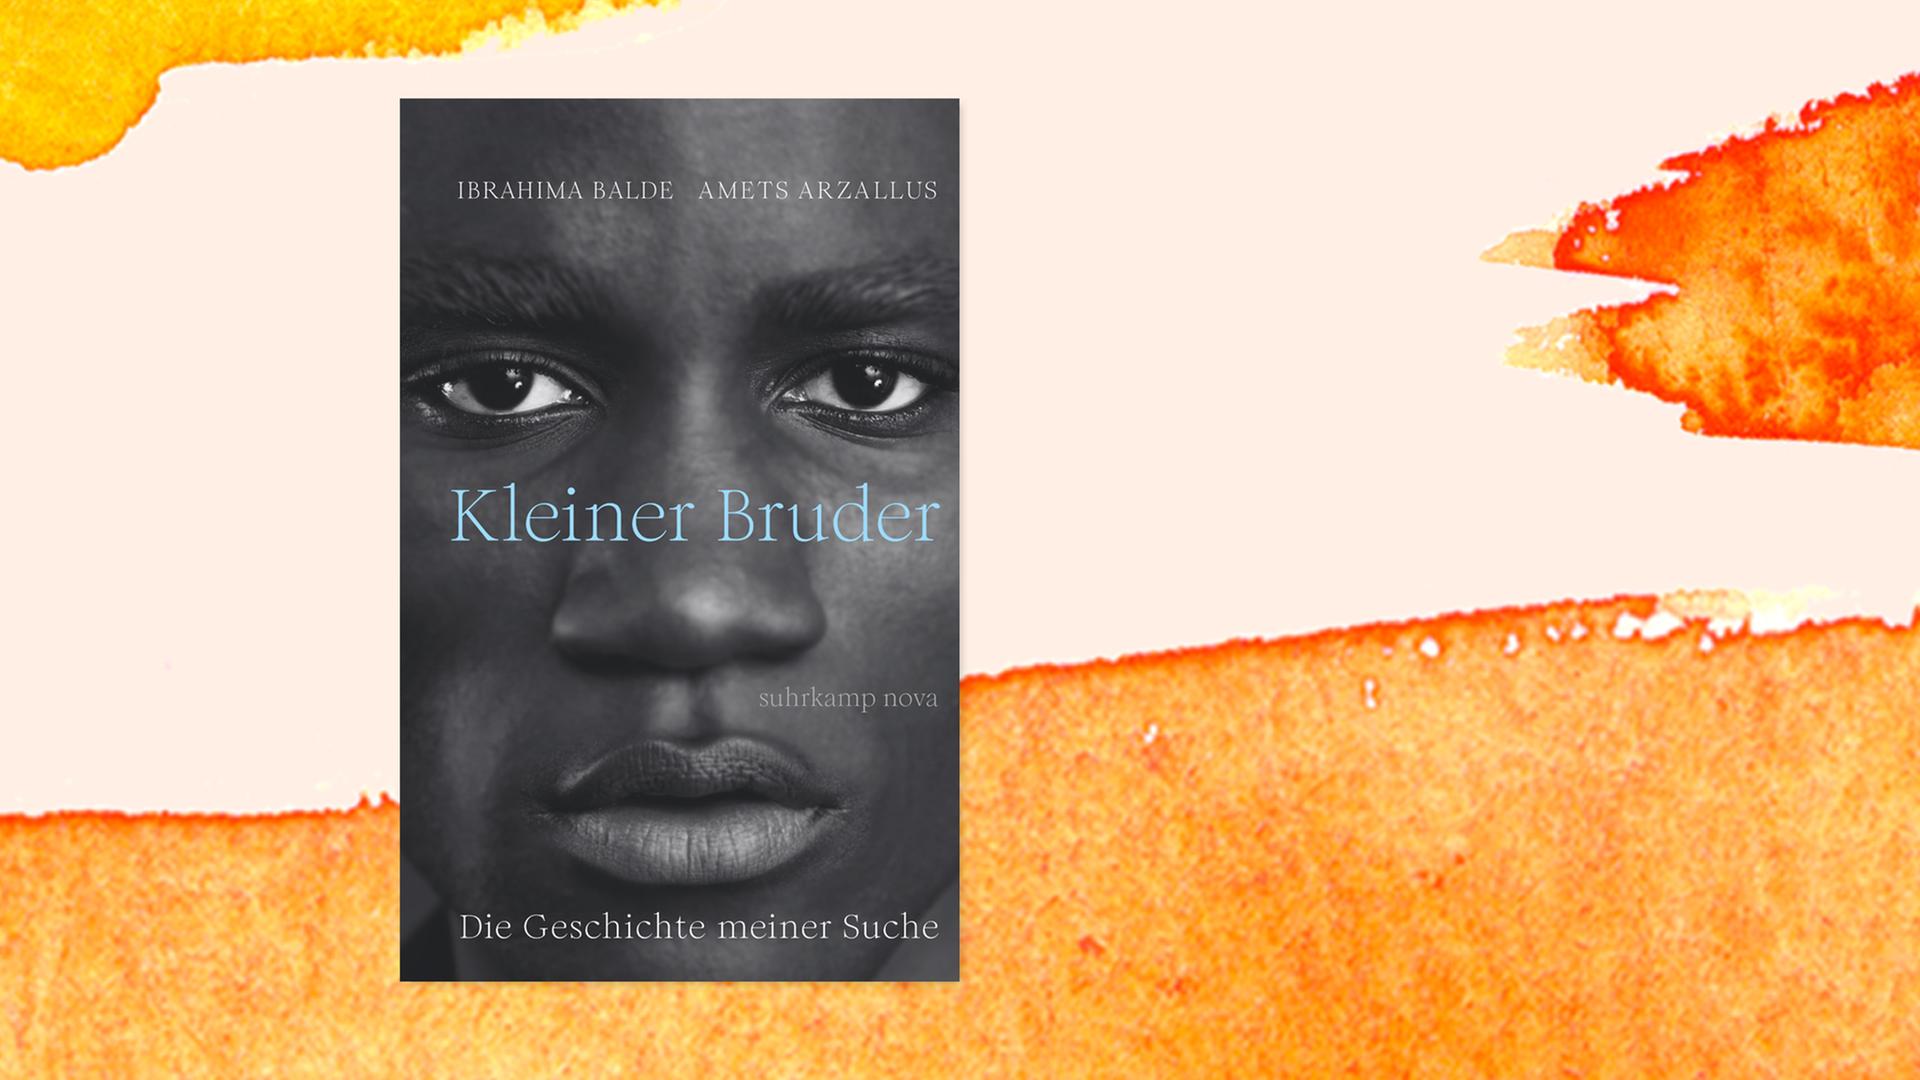 Das Cover des Buches "Kleiner Bruder", auf dem das Gesicht eines kleinen Jungen in Nahaufnahme zu sehen ist.